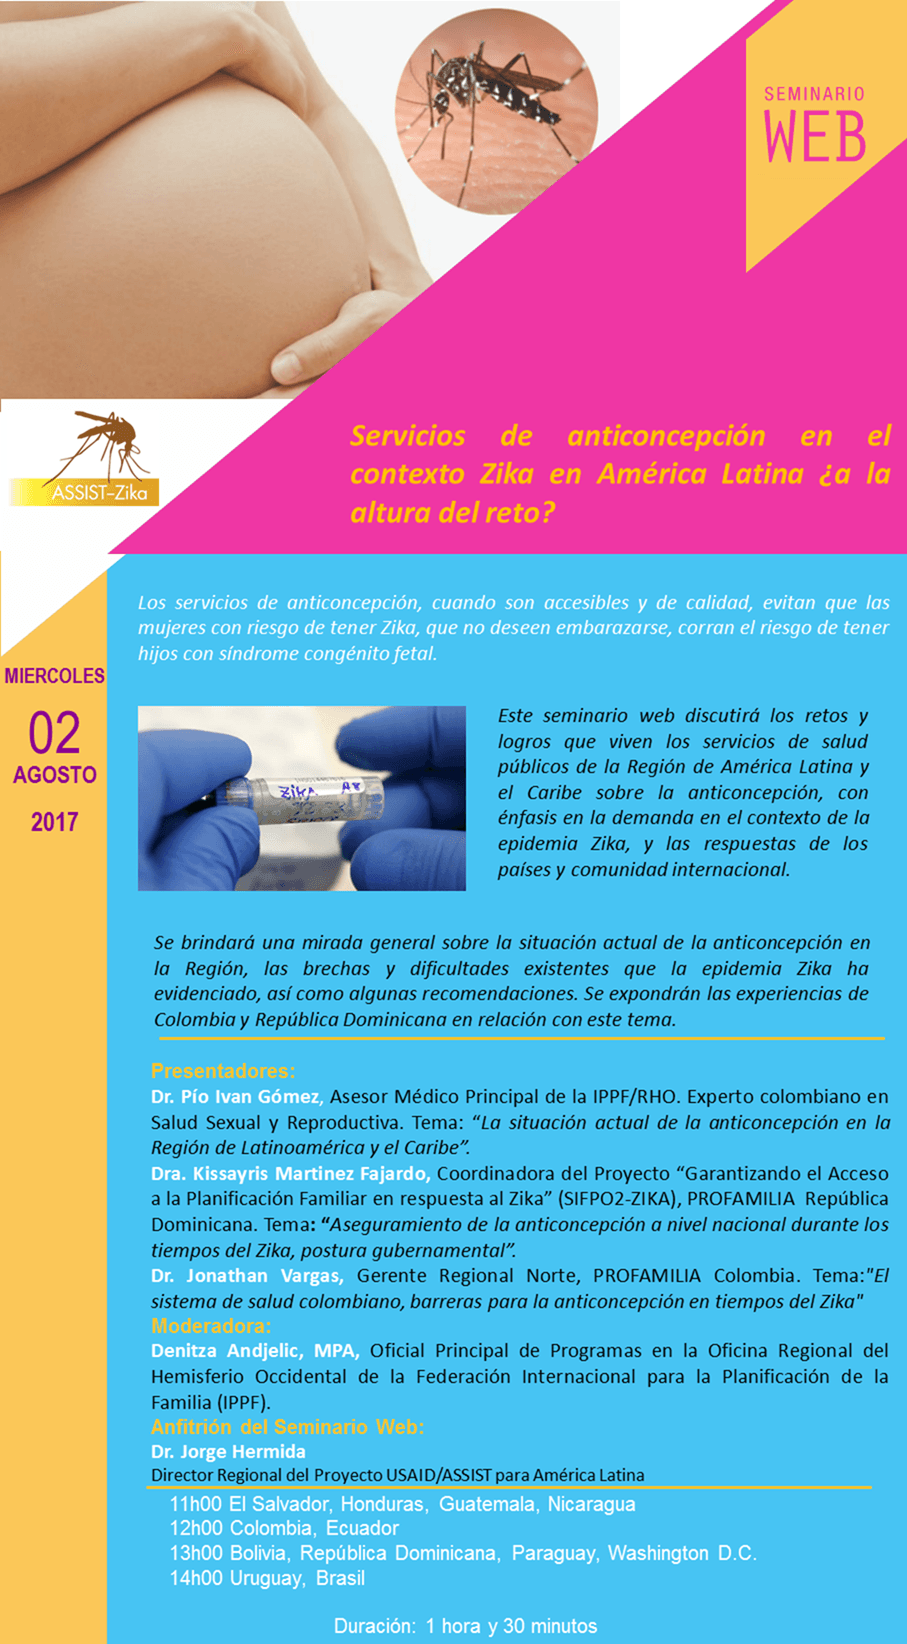 seminario-web-servicios-de-anticoncepcin-en-el-contexto-zika-en-amrica-latina-aa-la-altura-del-reto-43005-compressor